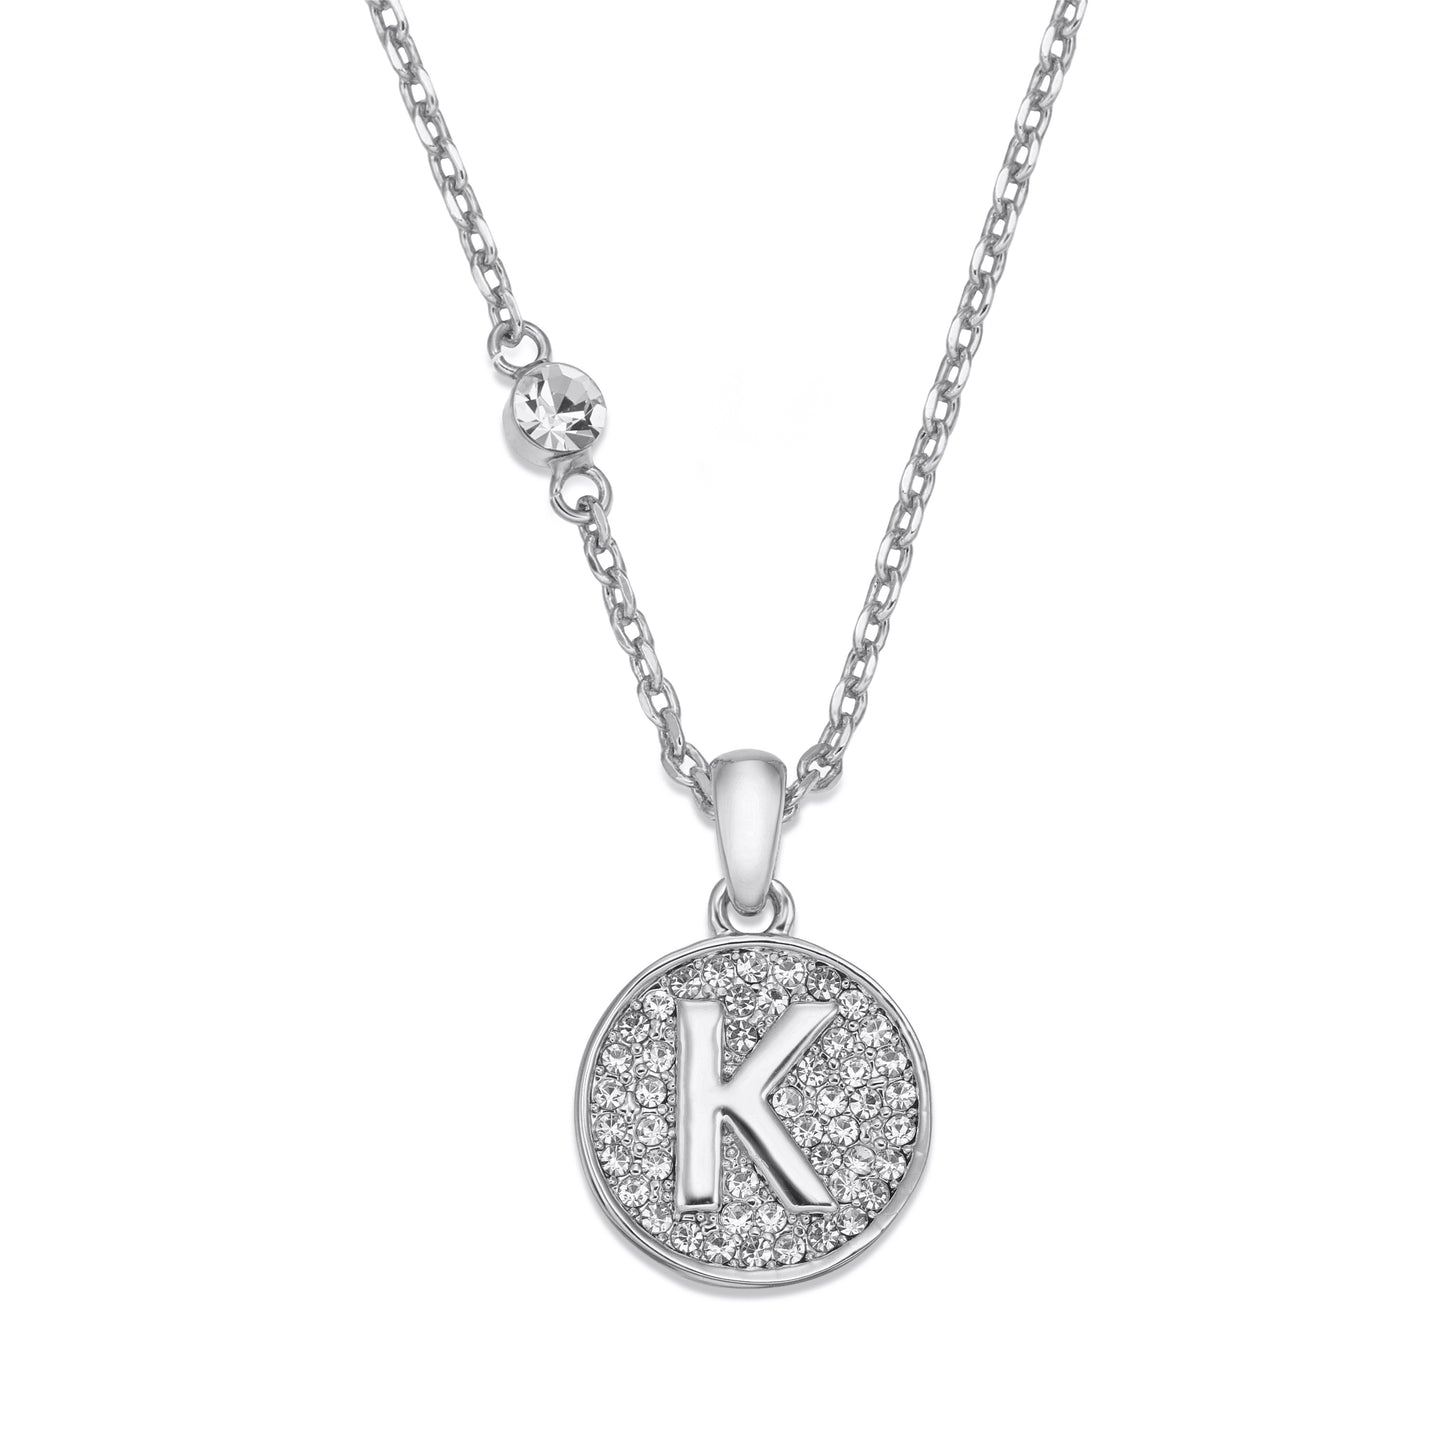 Rhodium necklace with initial | ${Vendor}